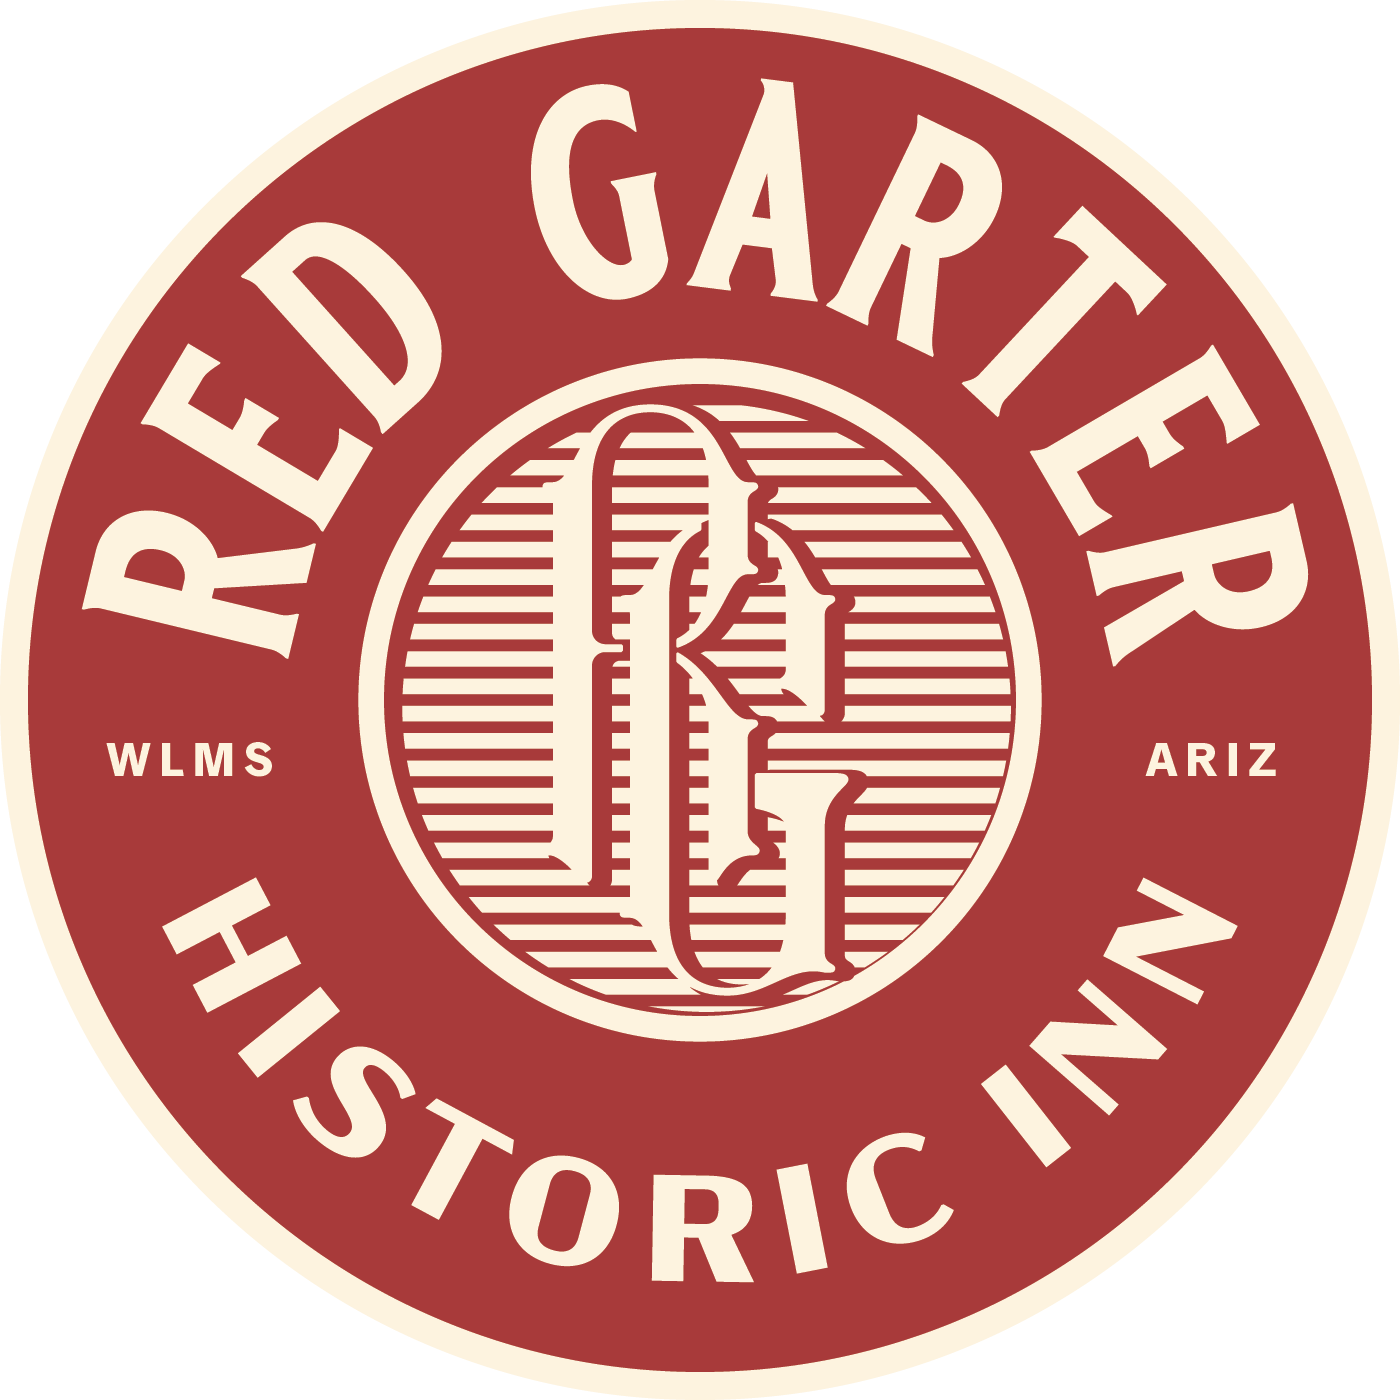 The Red Garter Inn